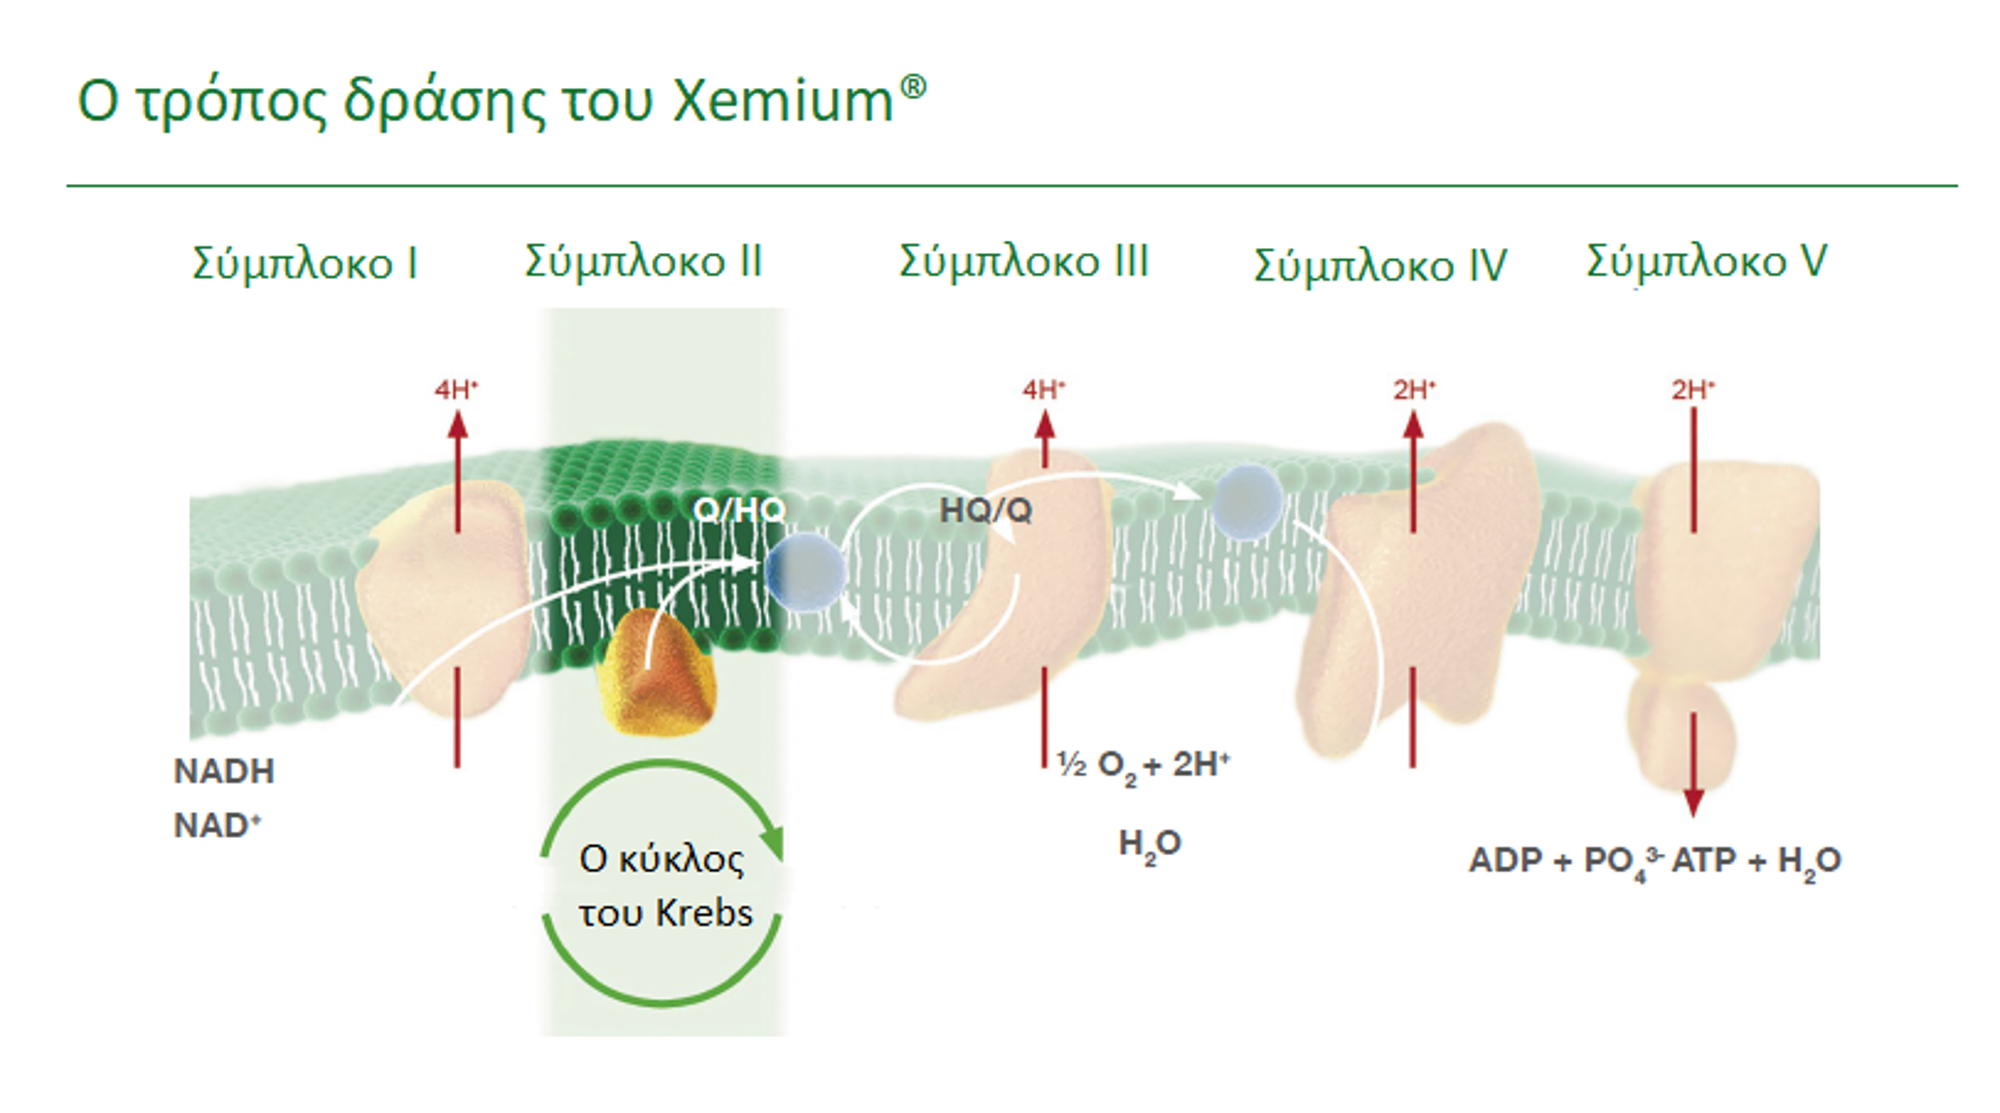 Τα χαρακτηριστικά του Xemium®